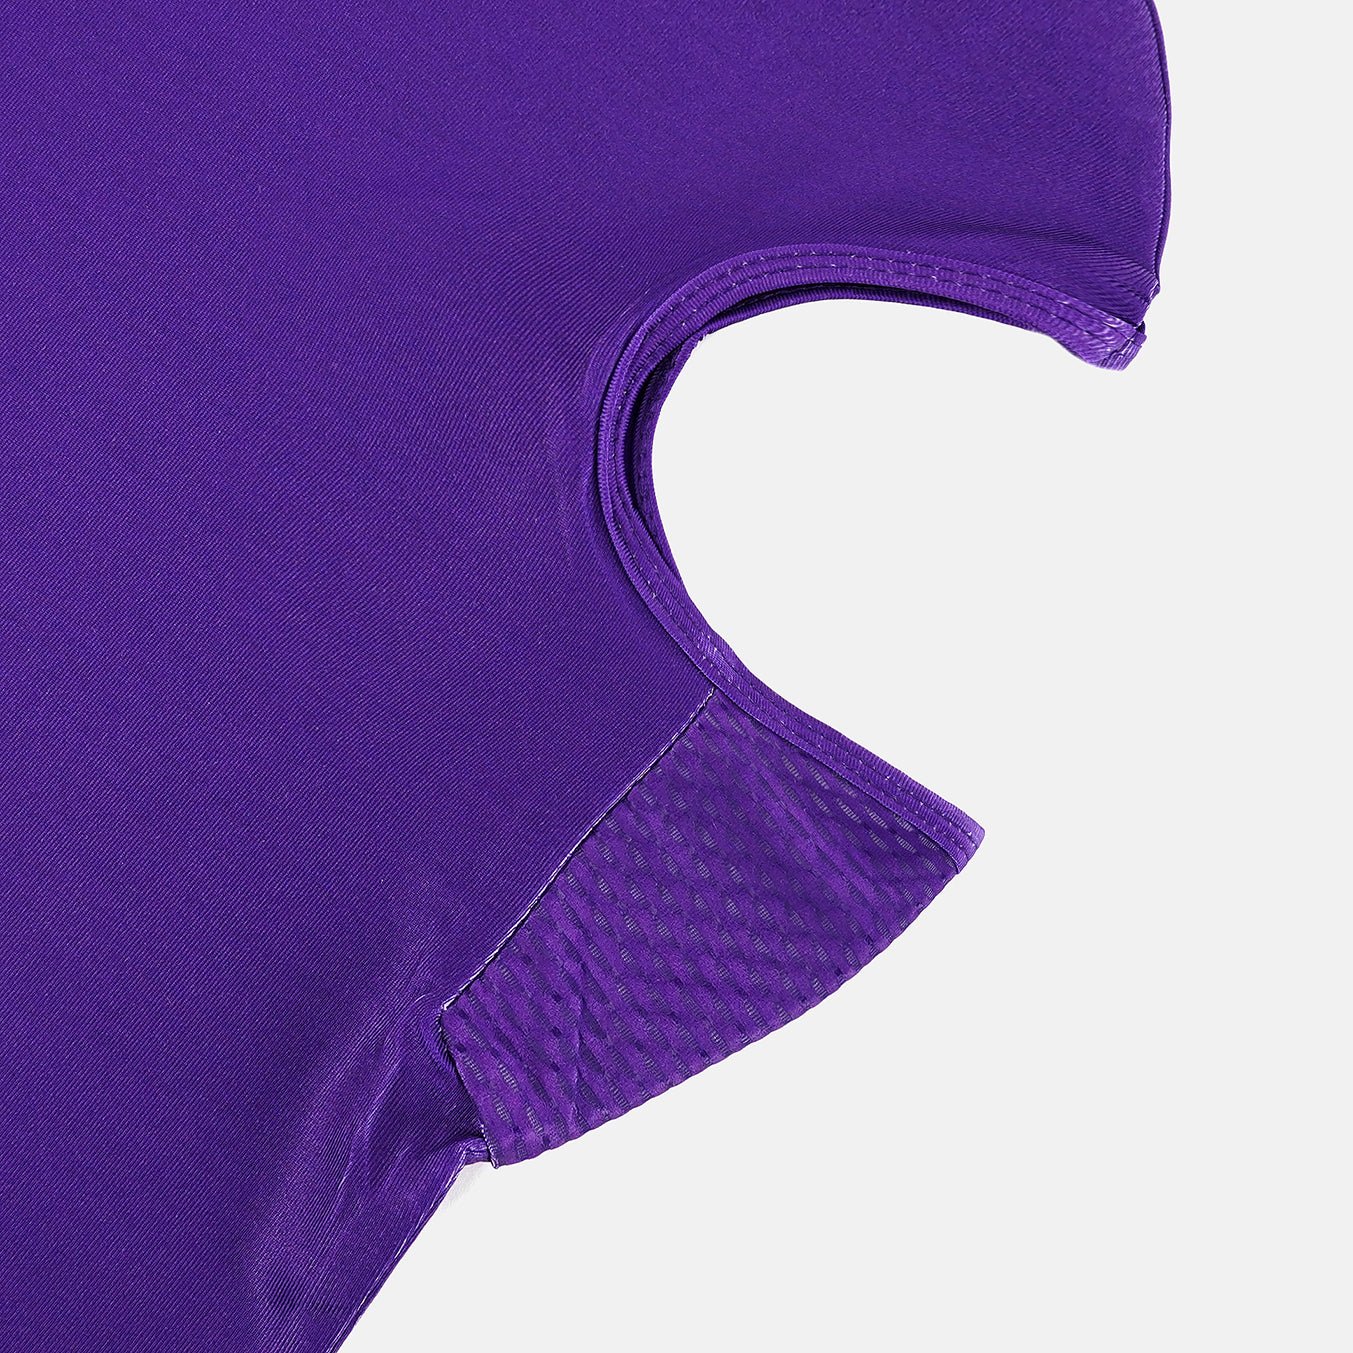 Hue Purple Kids Shiesty Mask